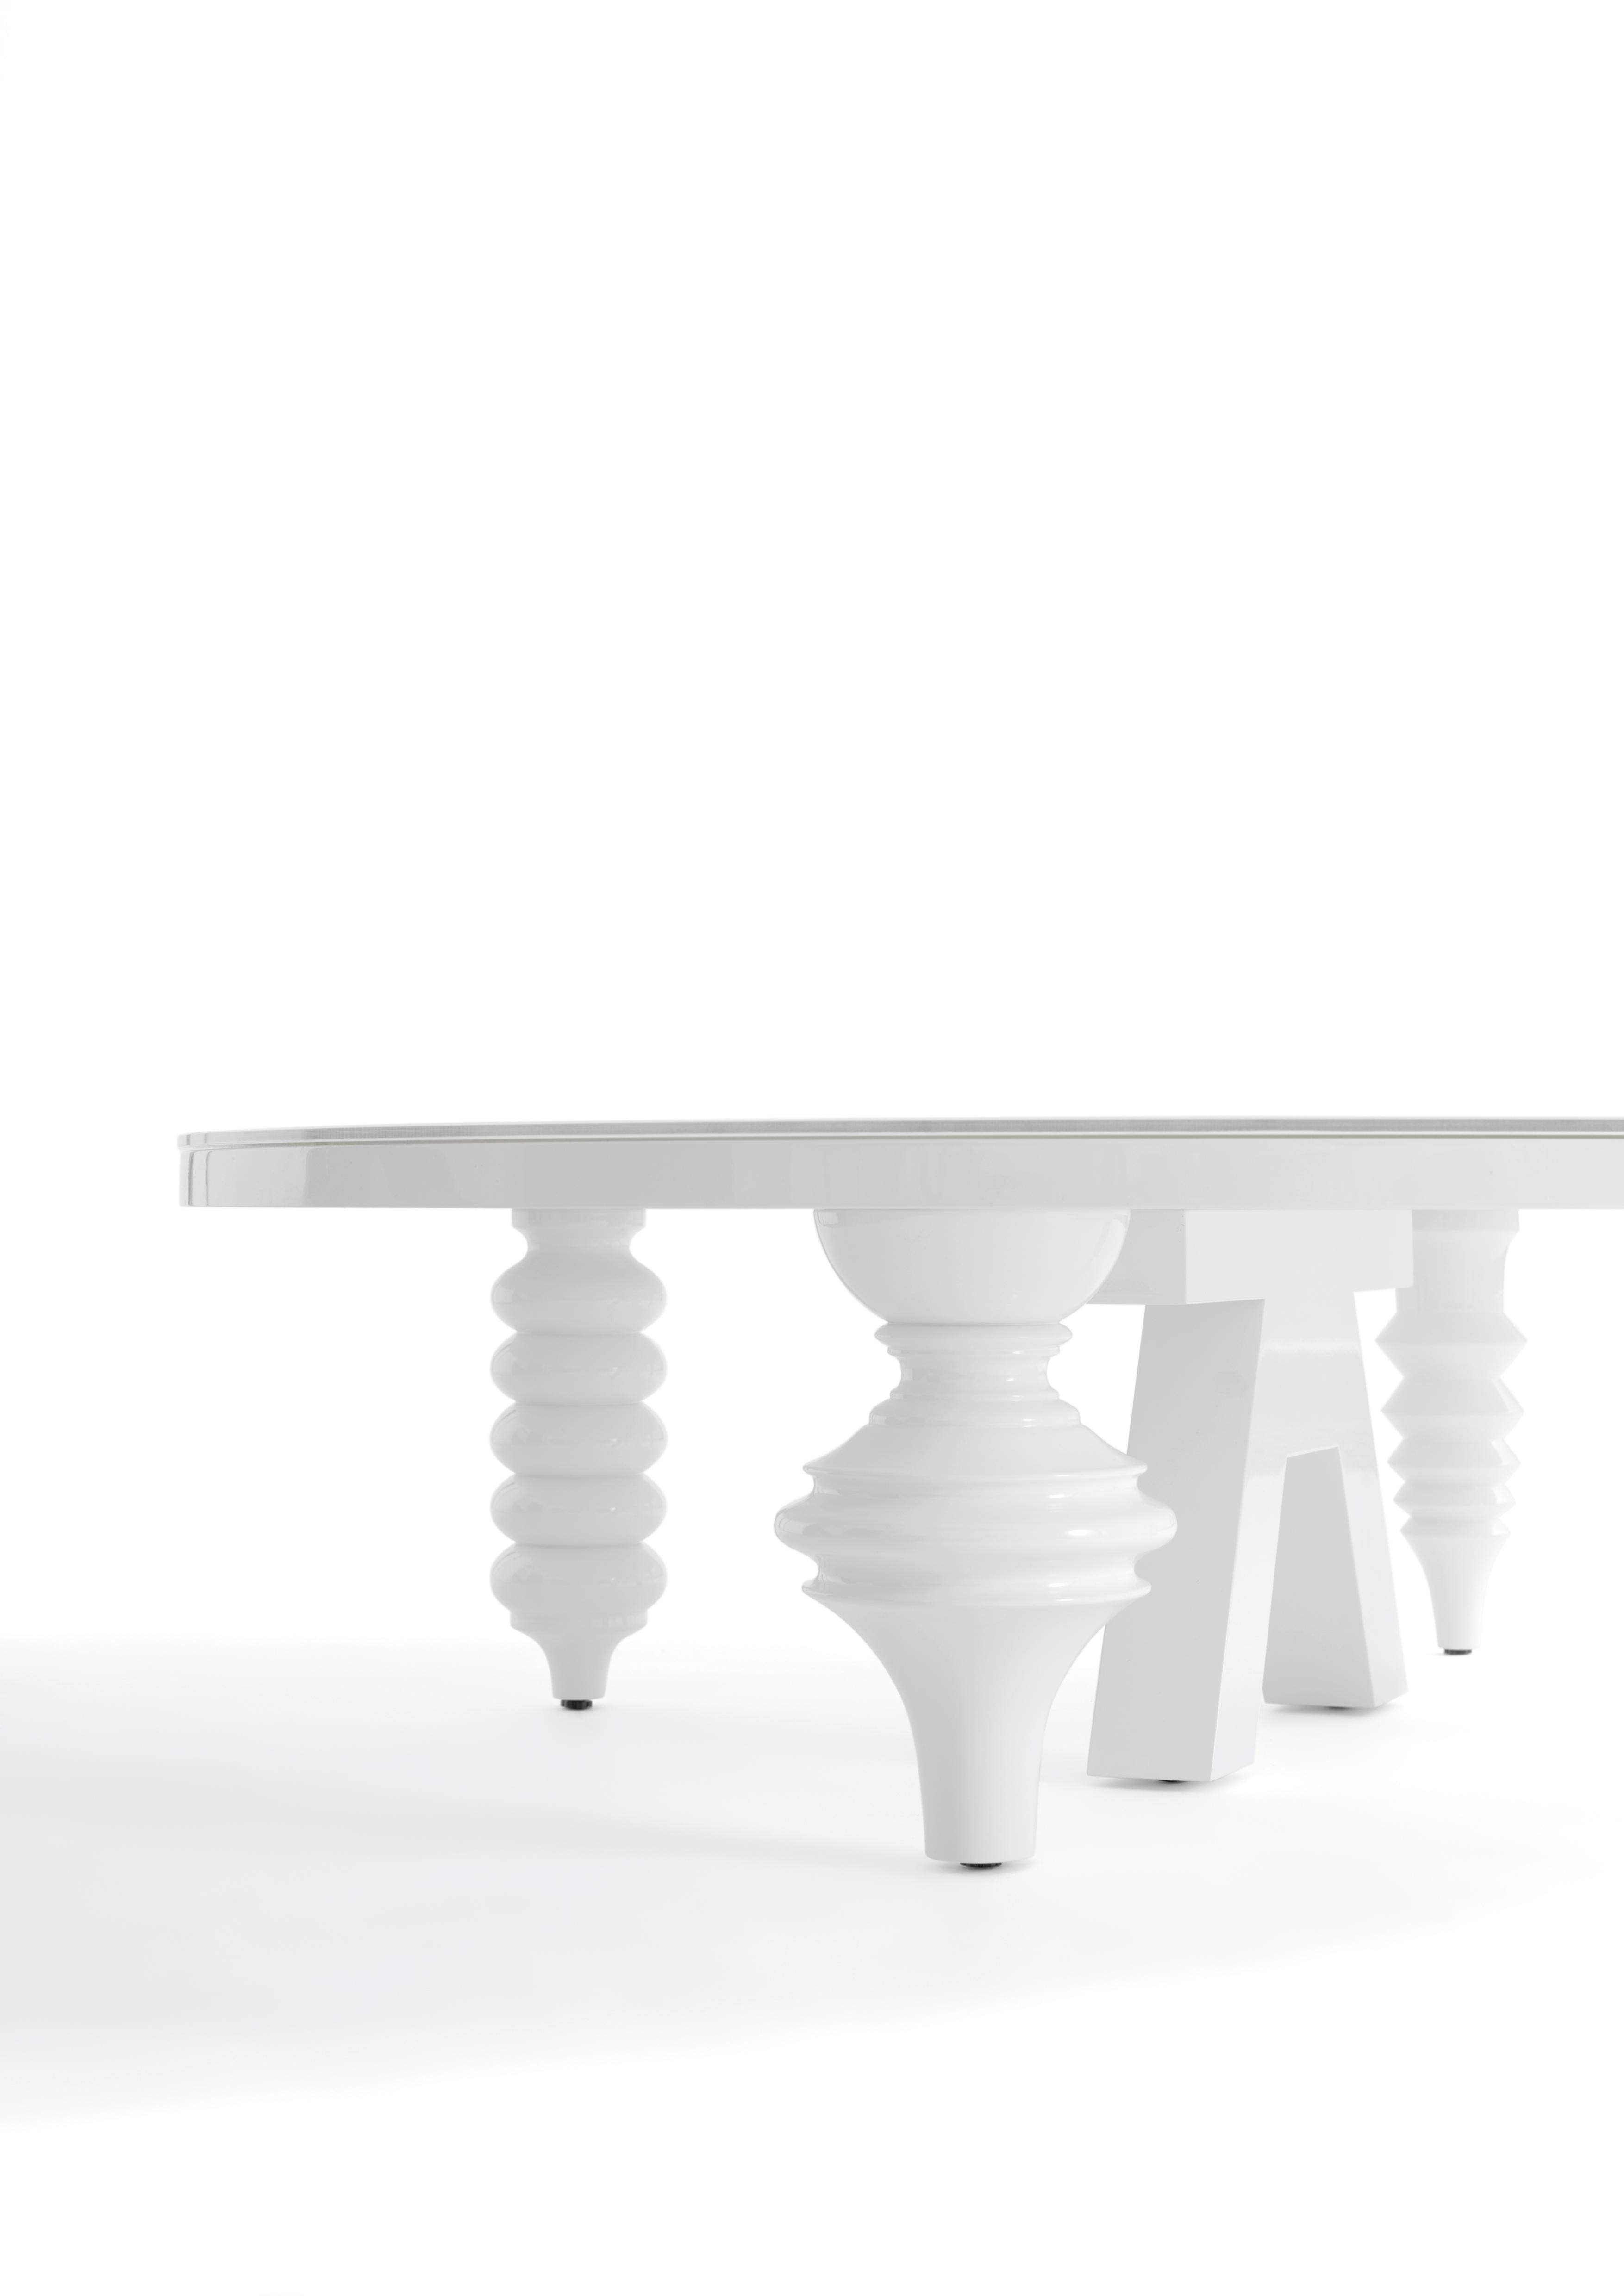 La table multijambe est née d'une manière évidente, à partir du meuble multijambe. En utilisant les mêmes pieds, Jaime a conçu quatre plateaux de table, les transformant en pièces centrales sculpturales fonctionnelles.

Base en MDF. Plateau en verre